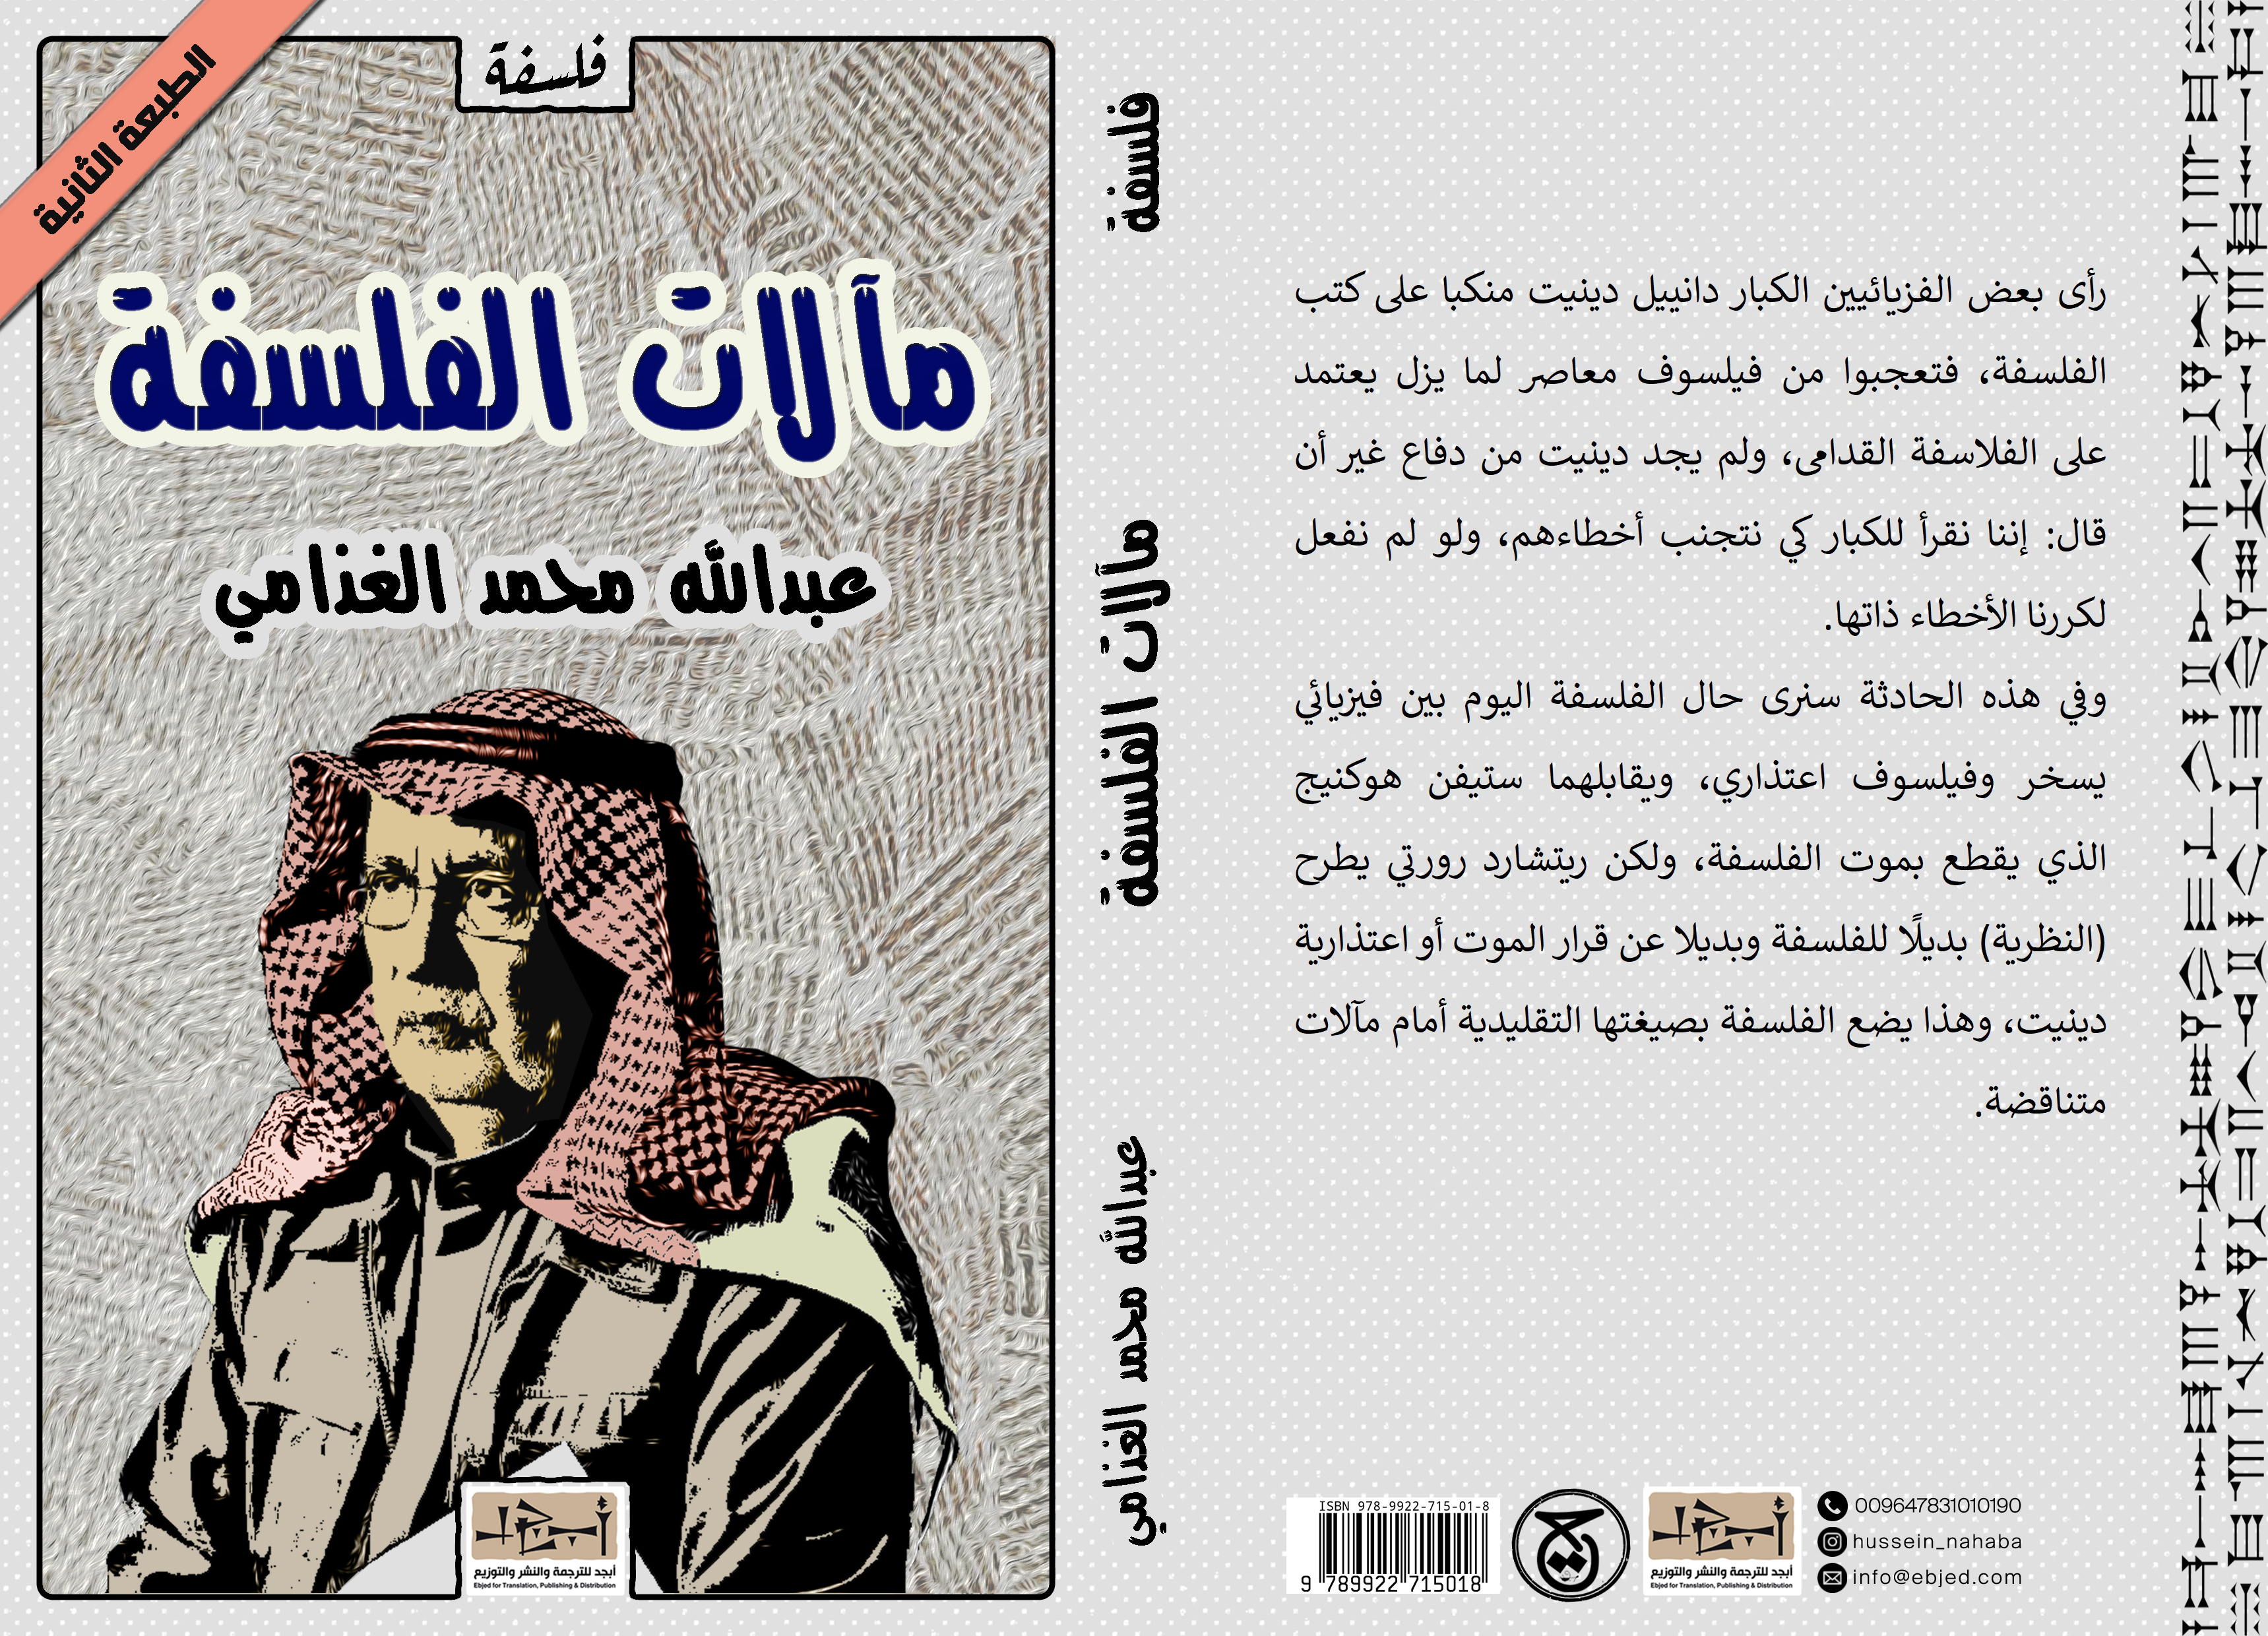 عنوان الكتاب: مآلات الفلسفة تأليف: د. عبد الله الغذامي التصنيف: فلسفة